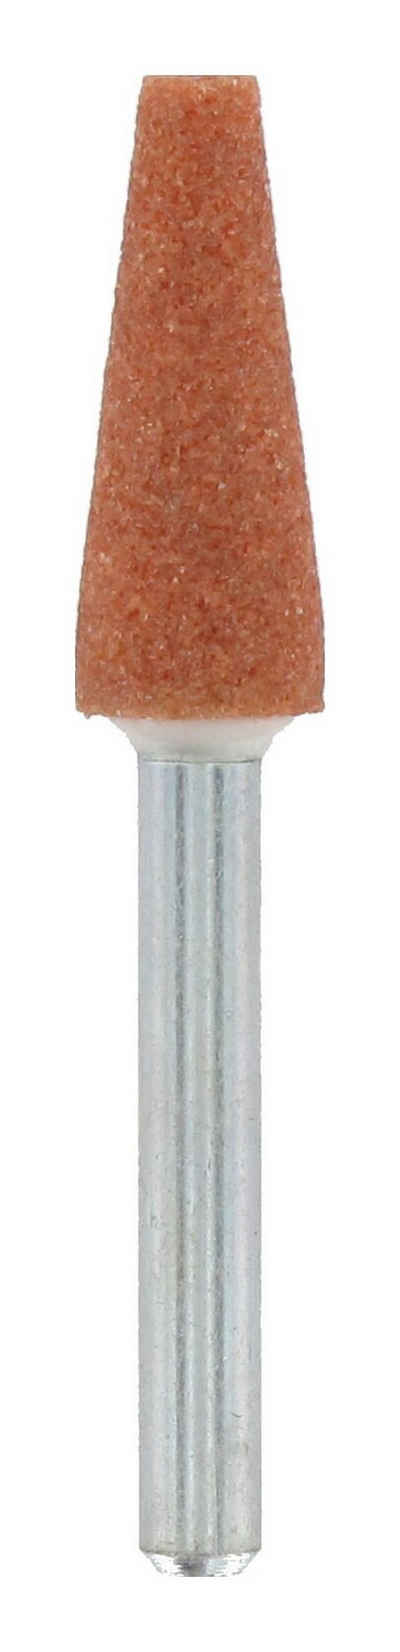 DREMEL Schleifstift, Korund-Schleifspitze 6,4 mm